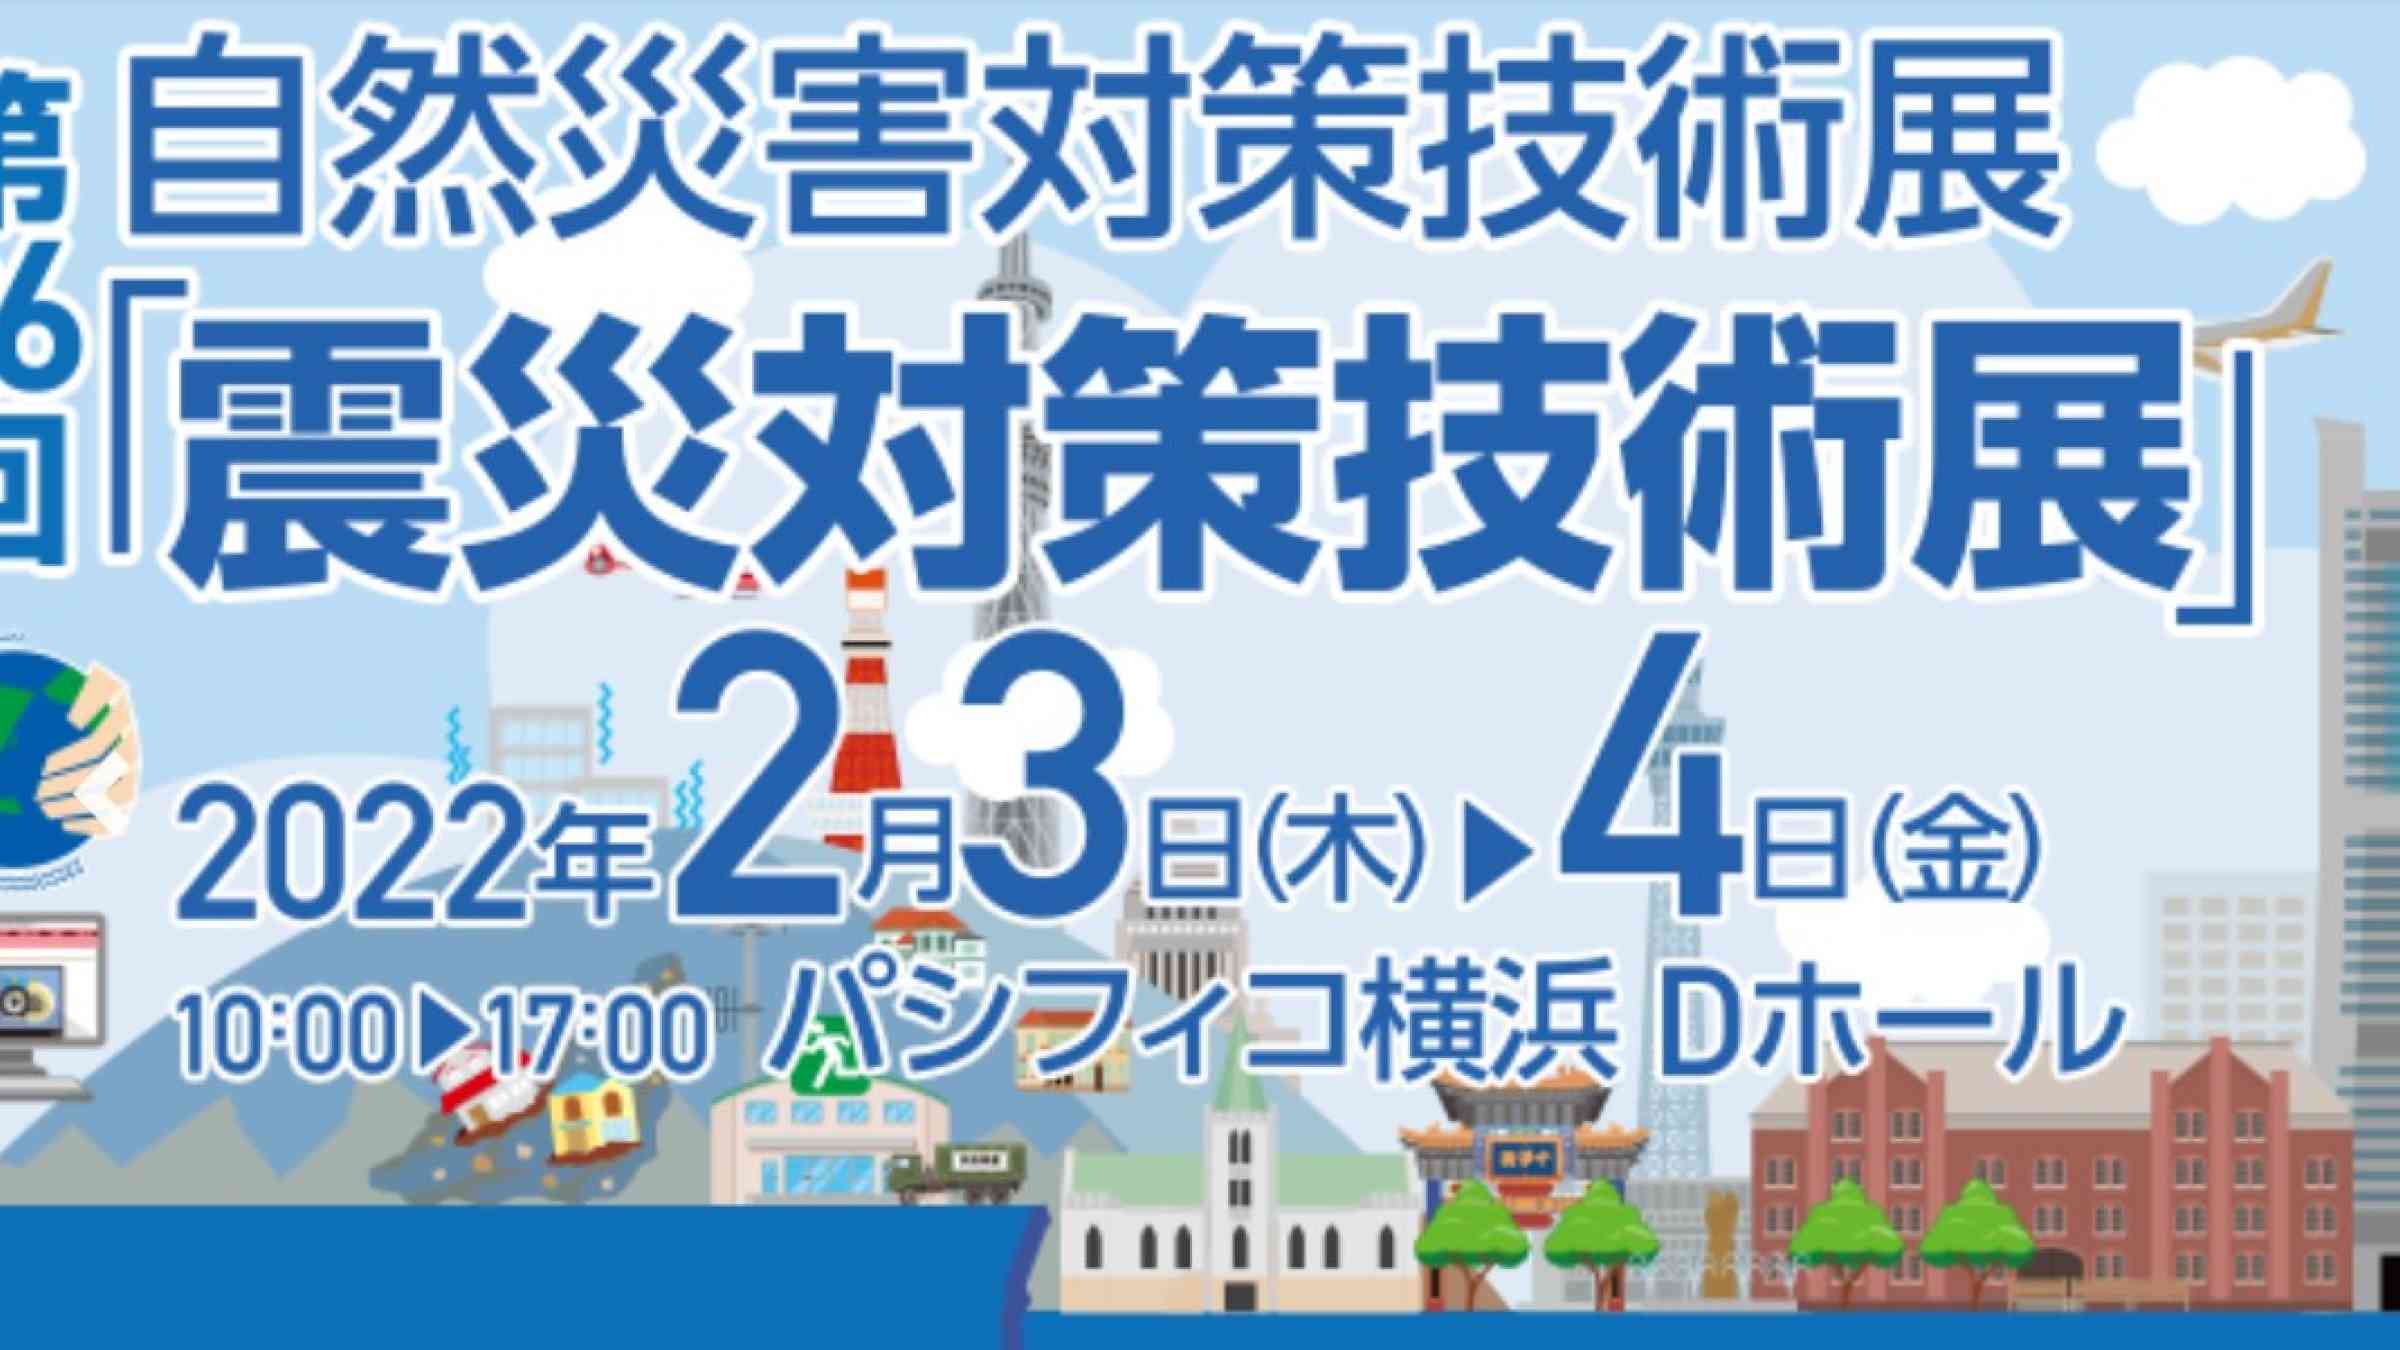 Earthquake Countermeasures Technology Exhibition Yokohama 2022